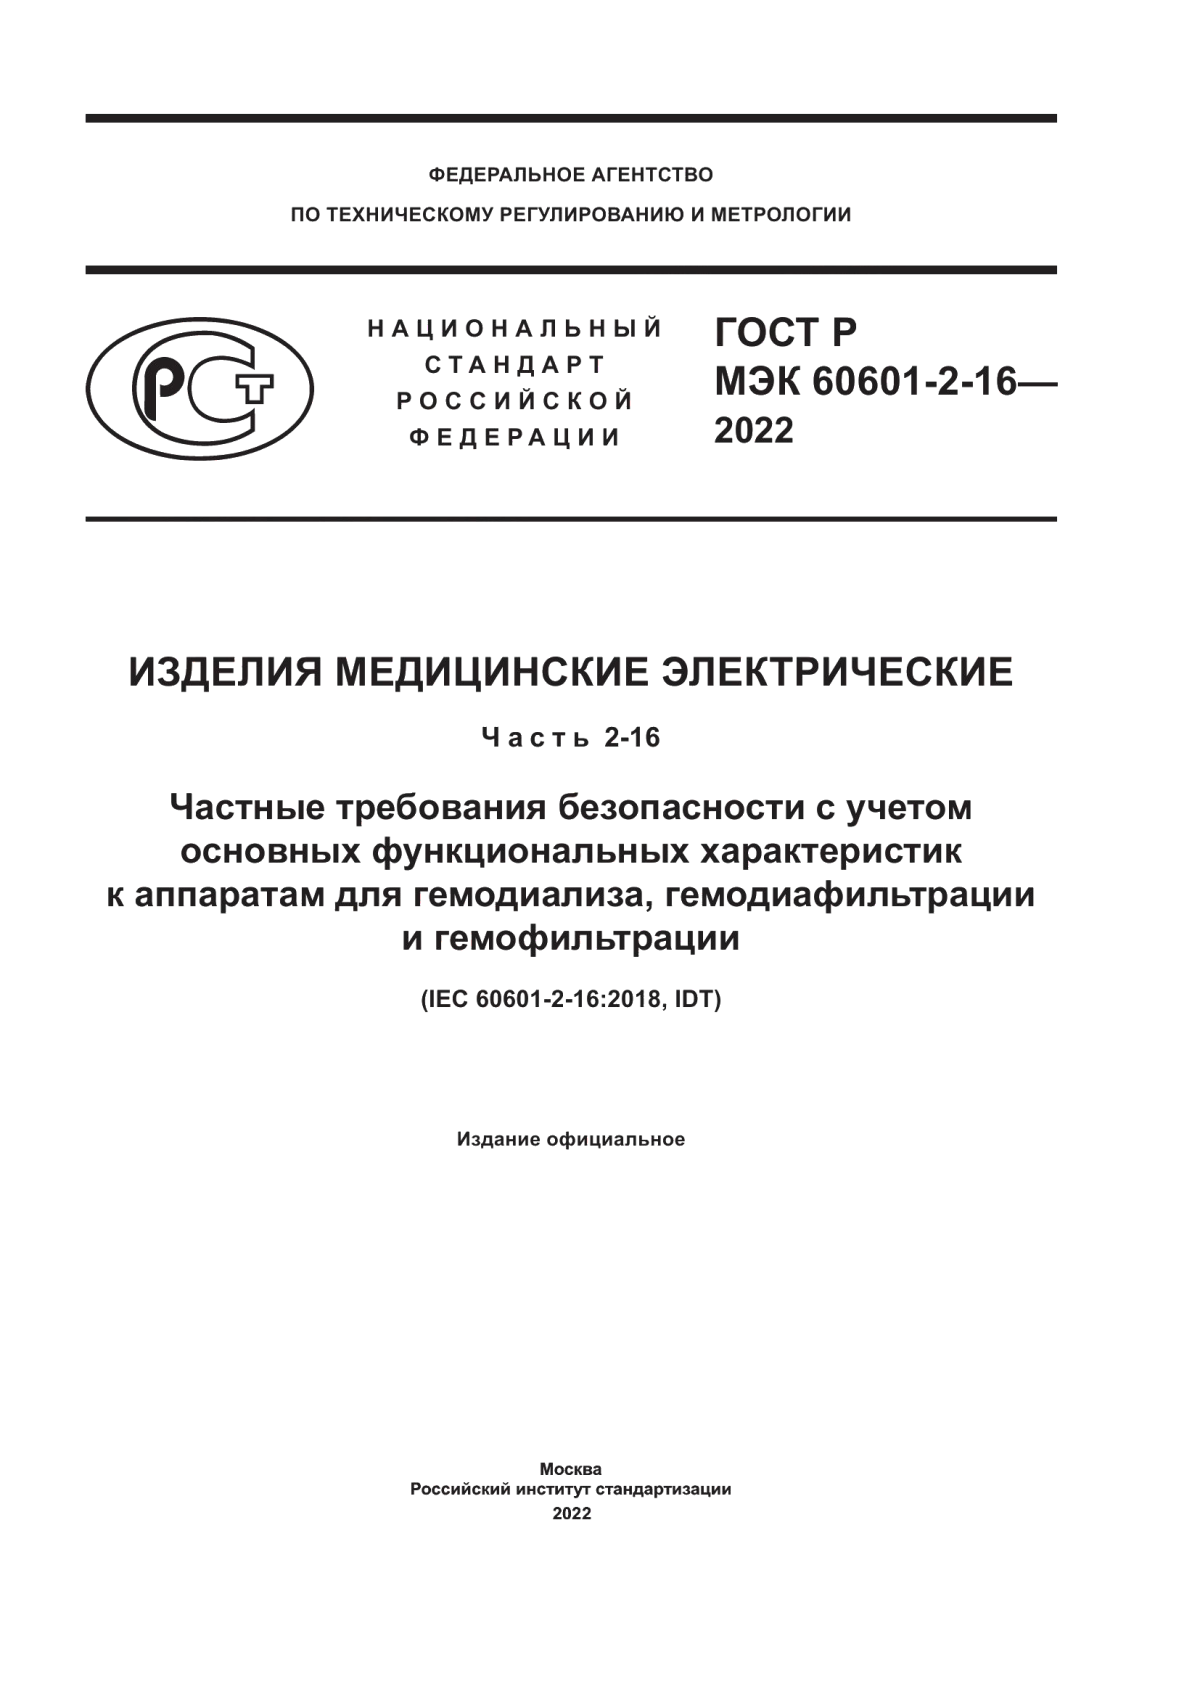 ГОСТ Р МЭК 60601-2-16-2022 Изделия медицинские электрические. Часть 2-16. Частные требования безопасности с учетом основных функциональных характеристик к аппаратам для гемодиализа, гемодиафильтрации и гемофильтрации